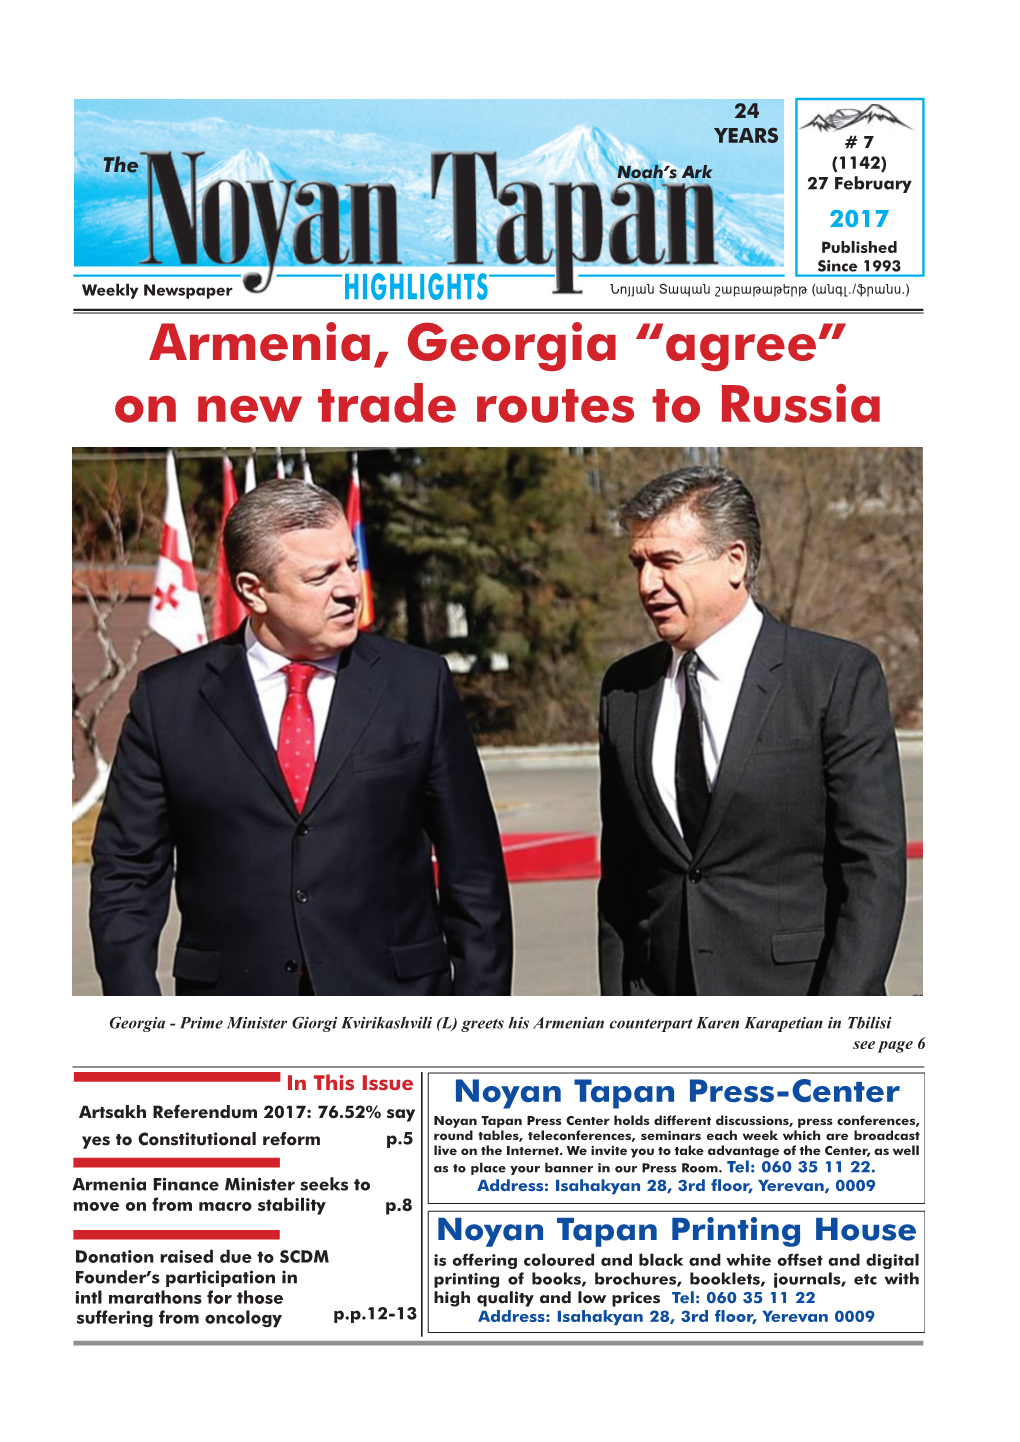 Armenia, Georgia “Agree” on New Trade Routes to Russia